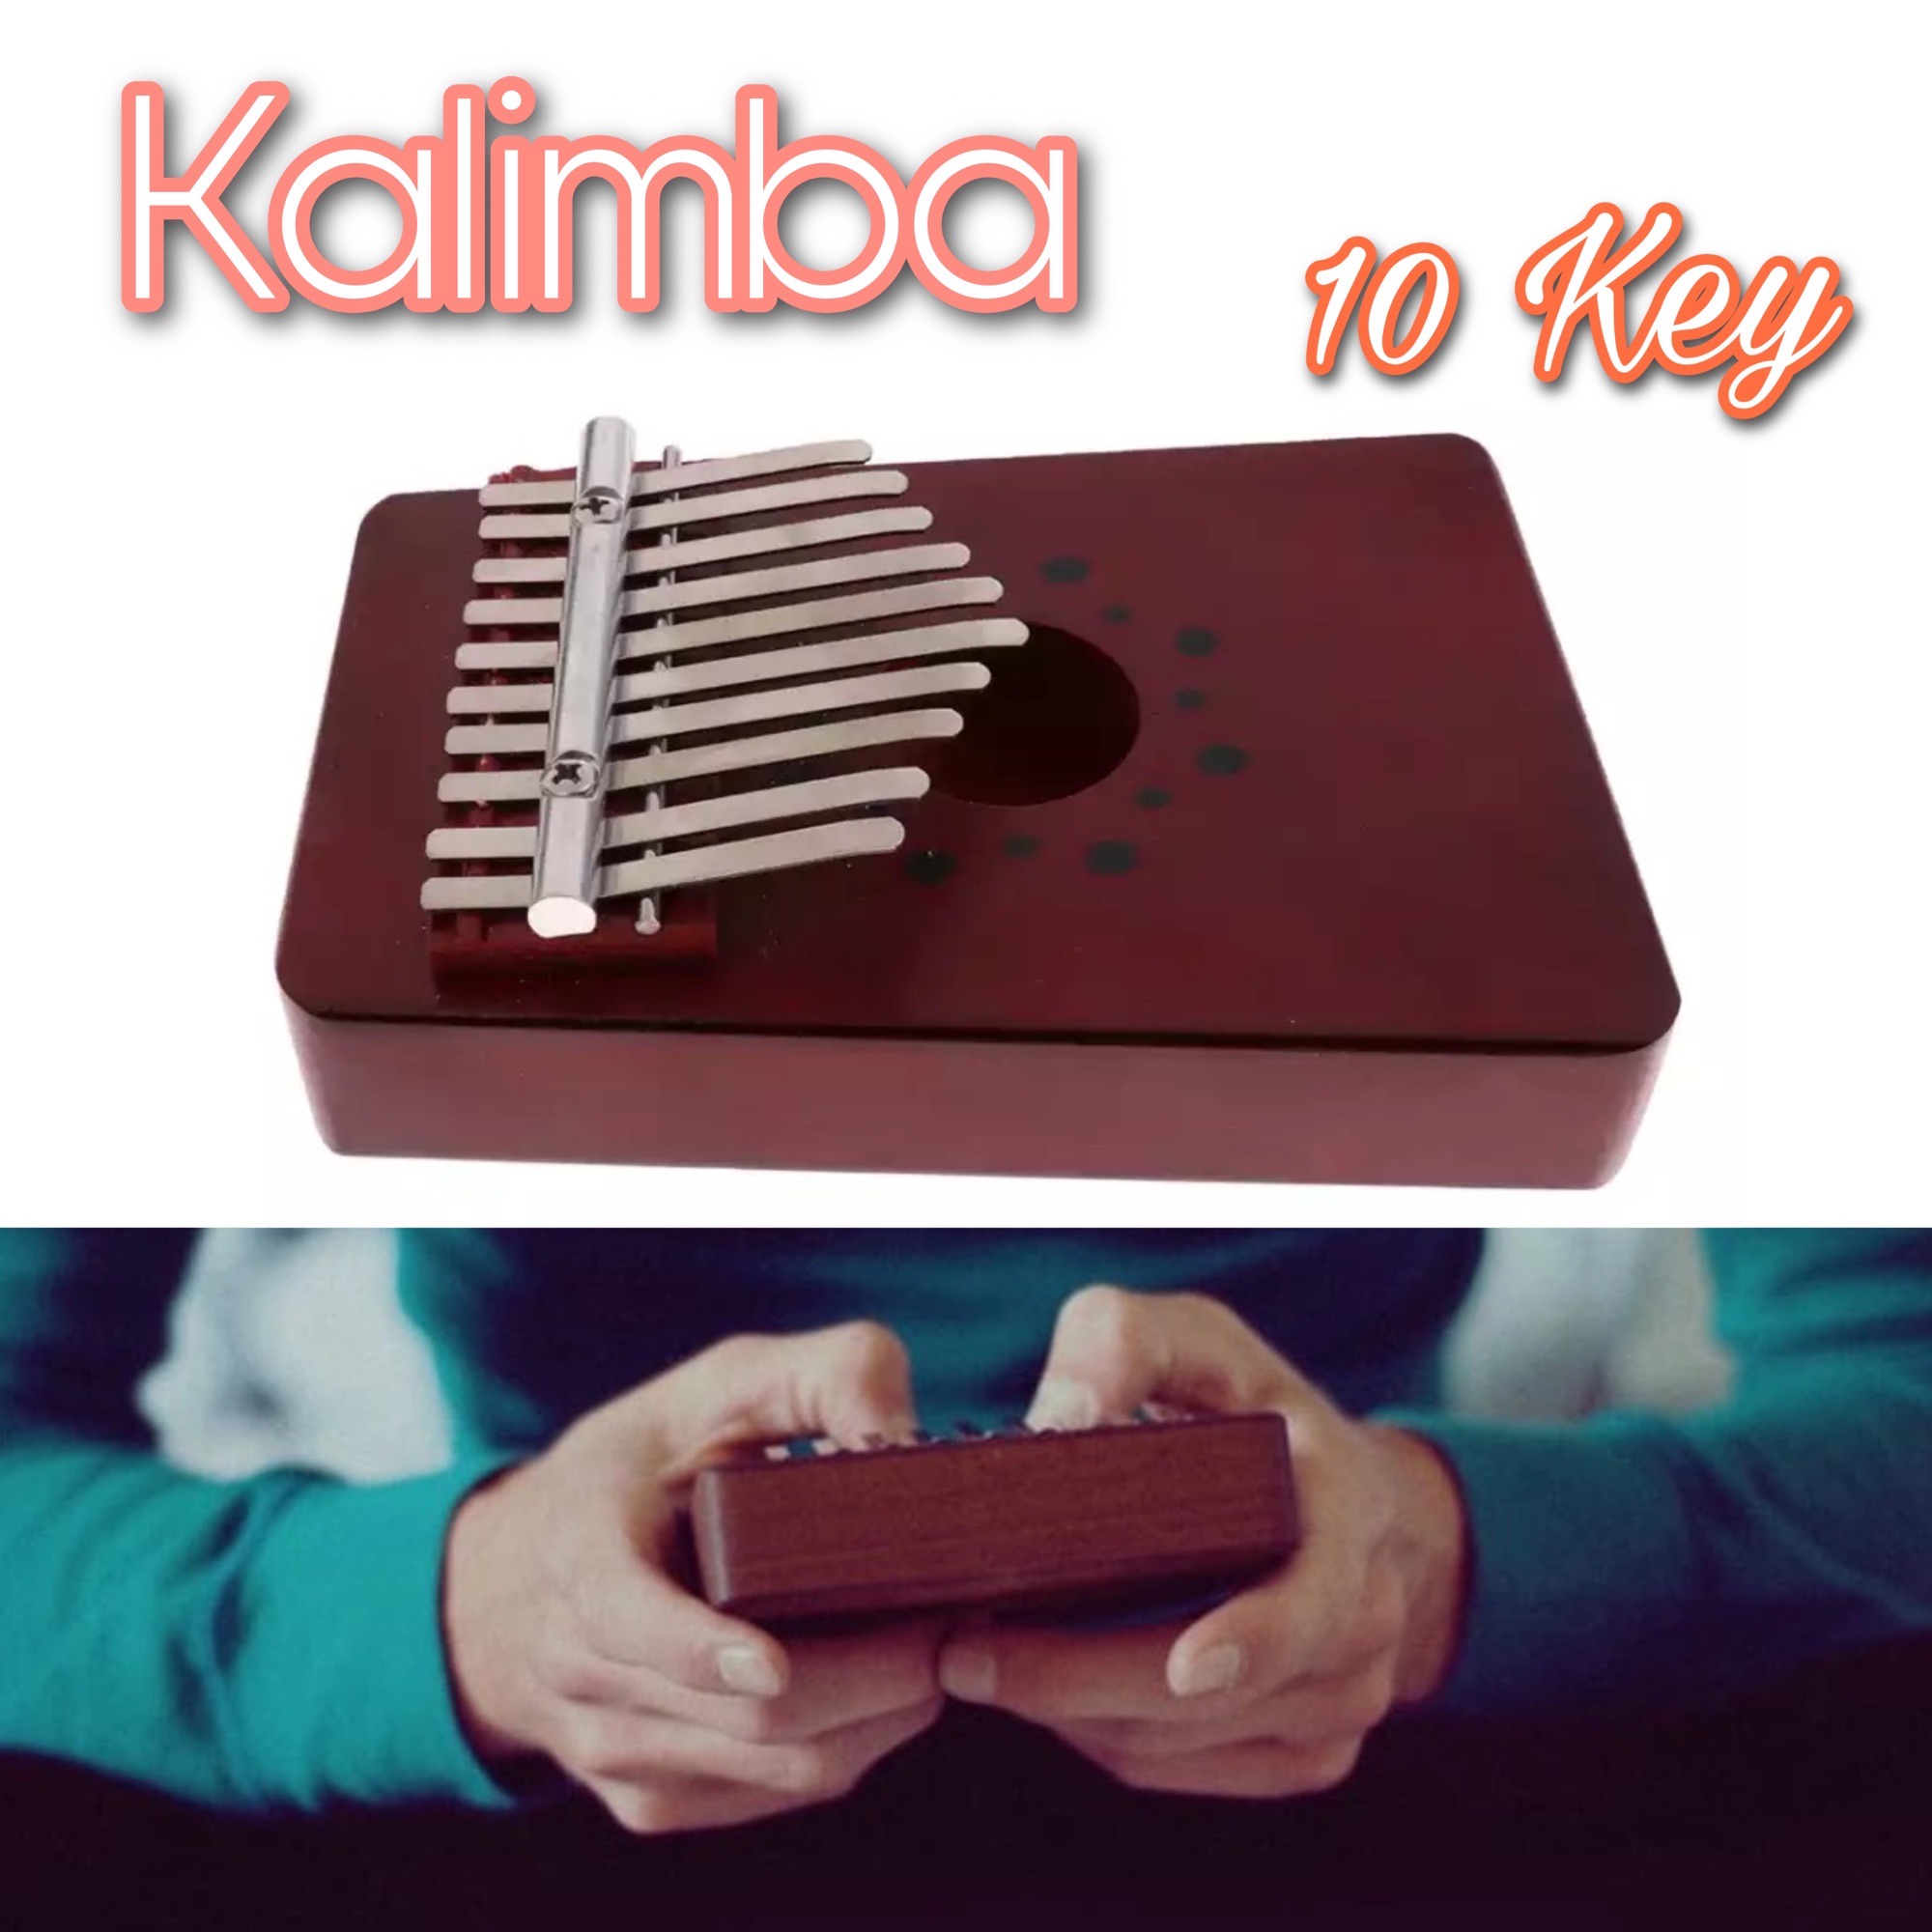 พร้อมส่ง✅ คาลิมบา คาลิมบ้า Kalimba เปียโน เปียโนมือ เปียโนนิ้วมือ เครื่องดนตรี 10 คีย์ piano